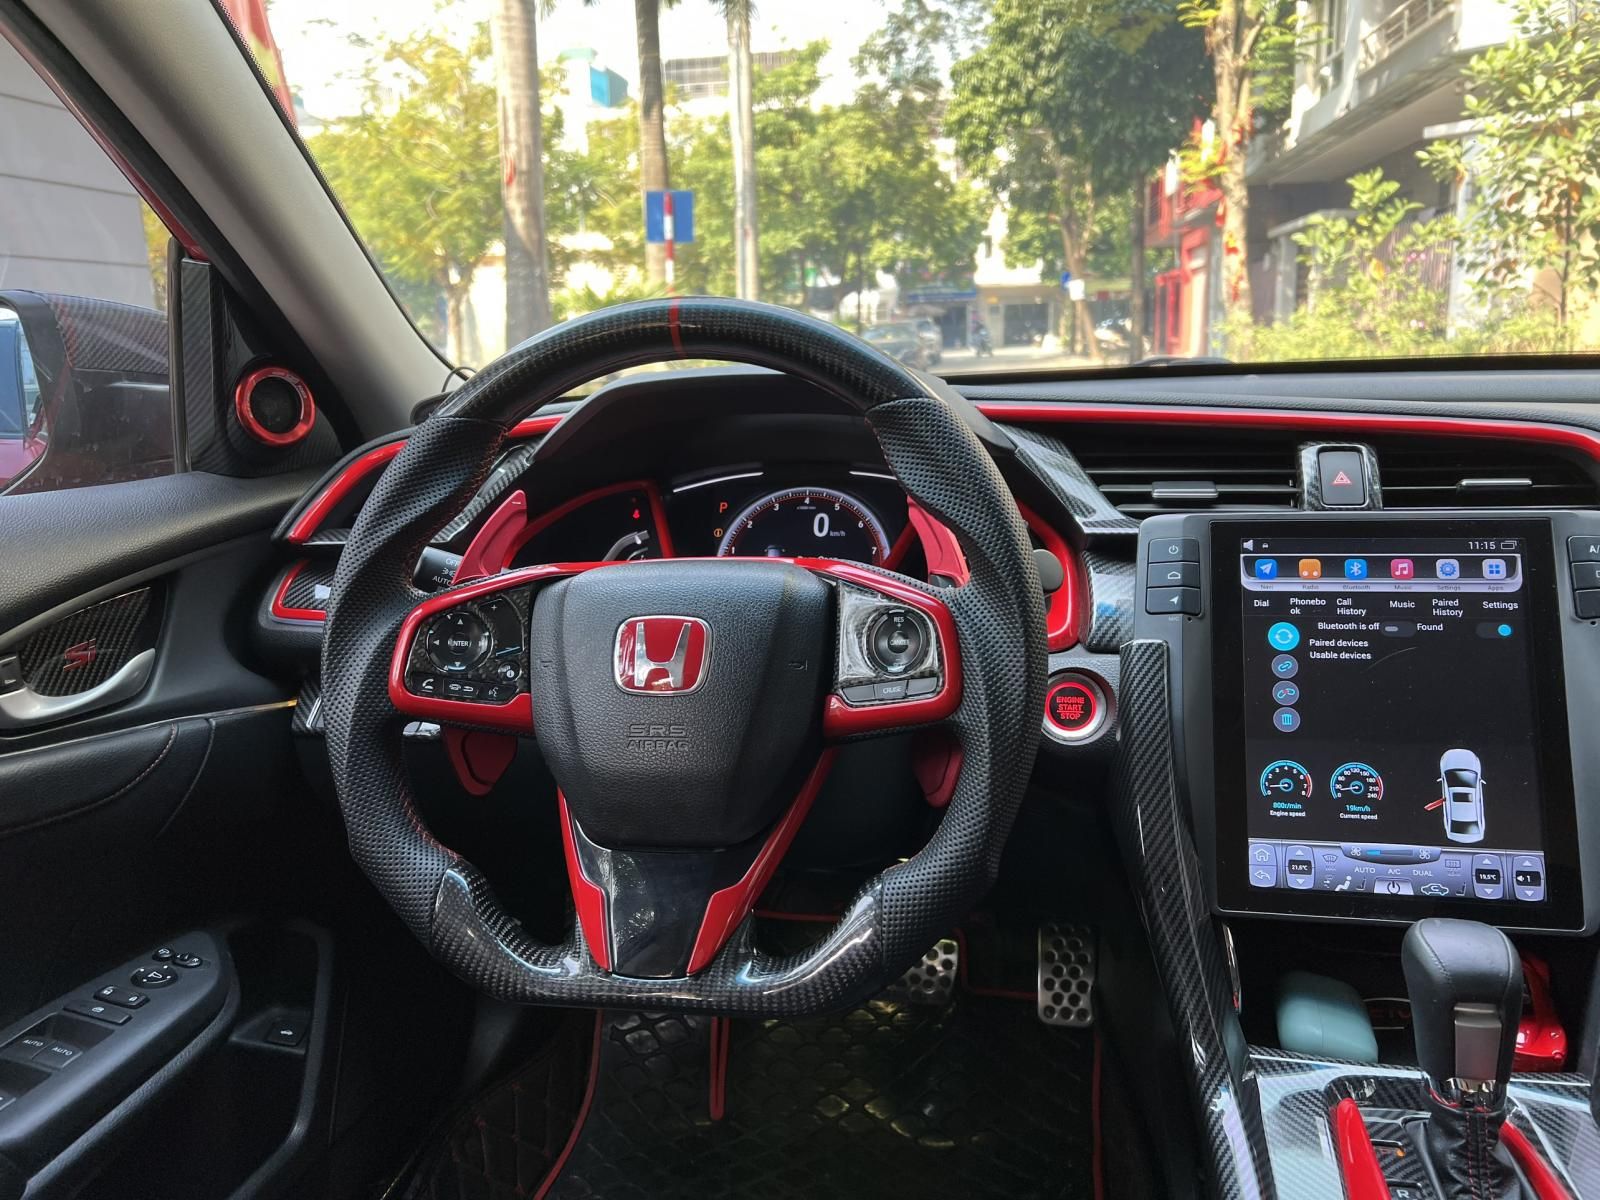 Honda Civic 2019 - Siêu độc lạ - Full đồ chơi - Nhập khẩu nguyên chiếc chạy chỉ 2v9 km